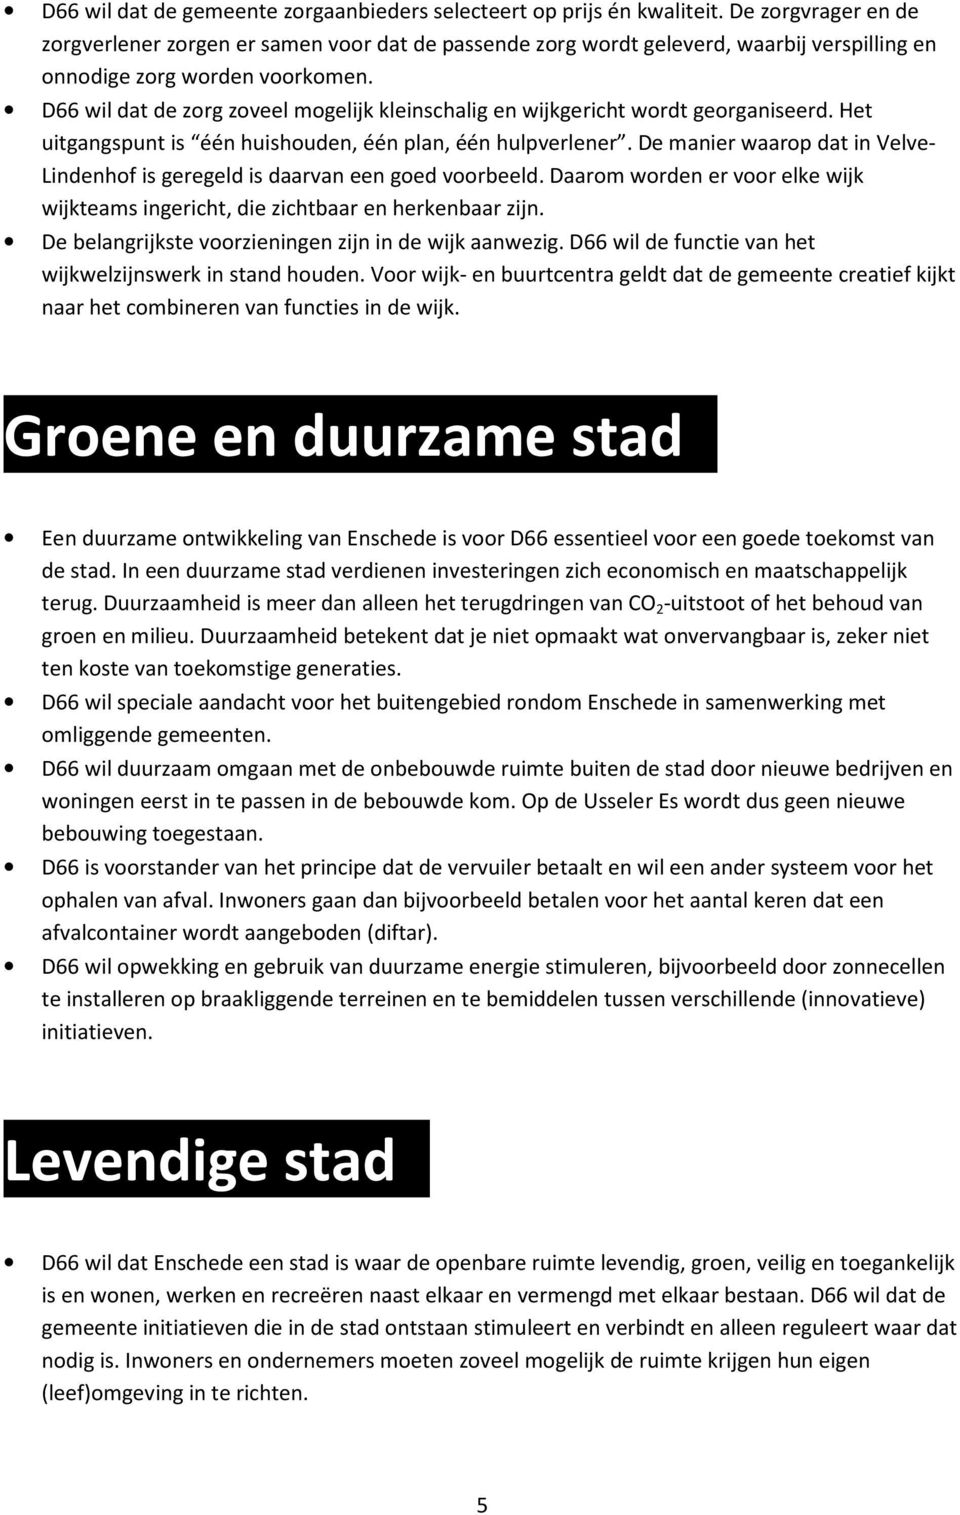 D66 wil dat de zorg zoveel mogelijk kleinschalig en wijkgericht wordt georganiseerd. Het uitgangspunt is één huishouden, één plan, één hulpverlener.